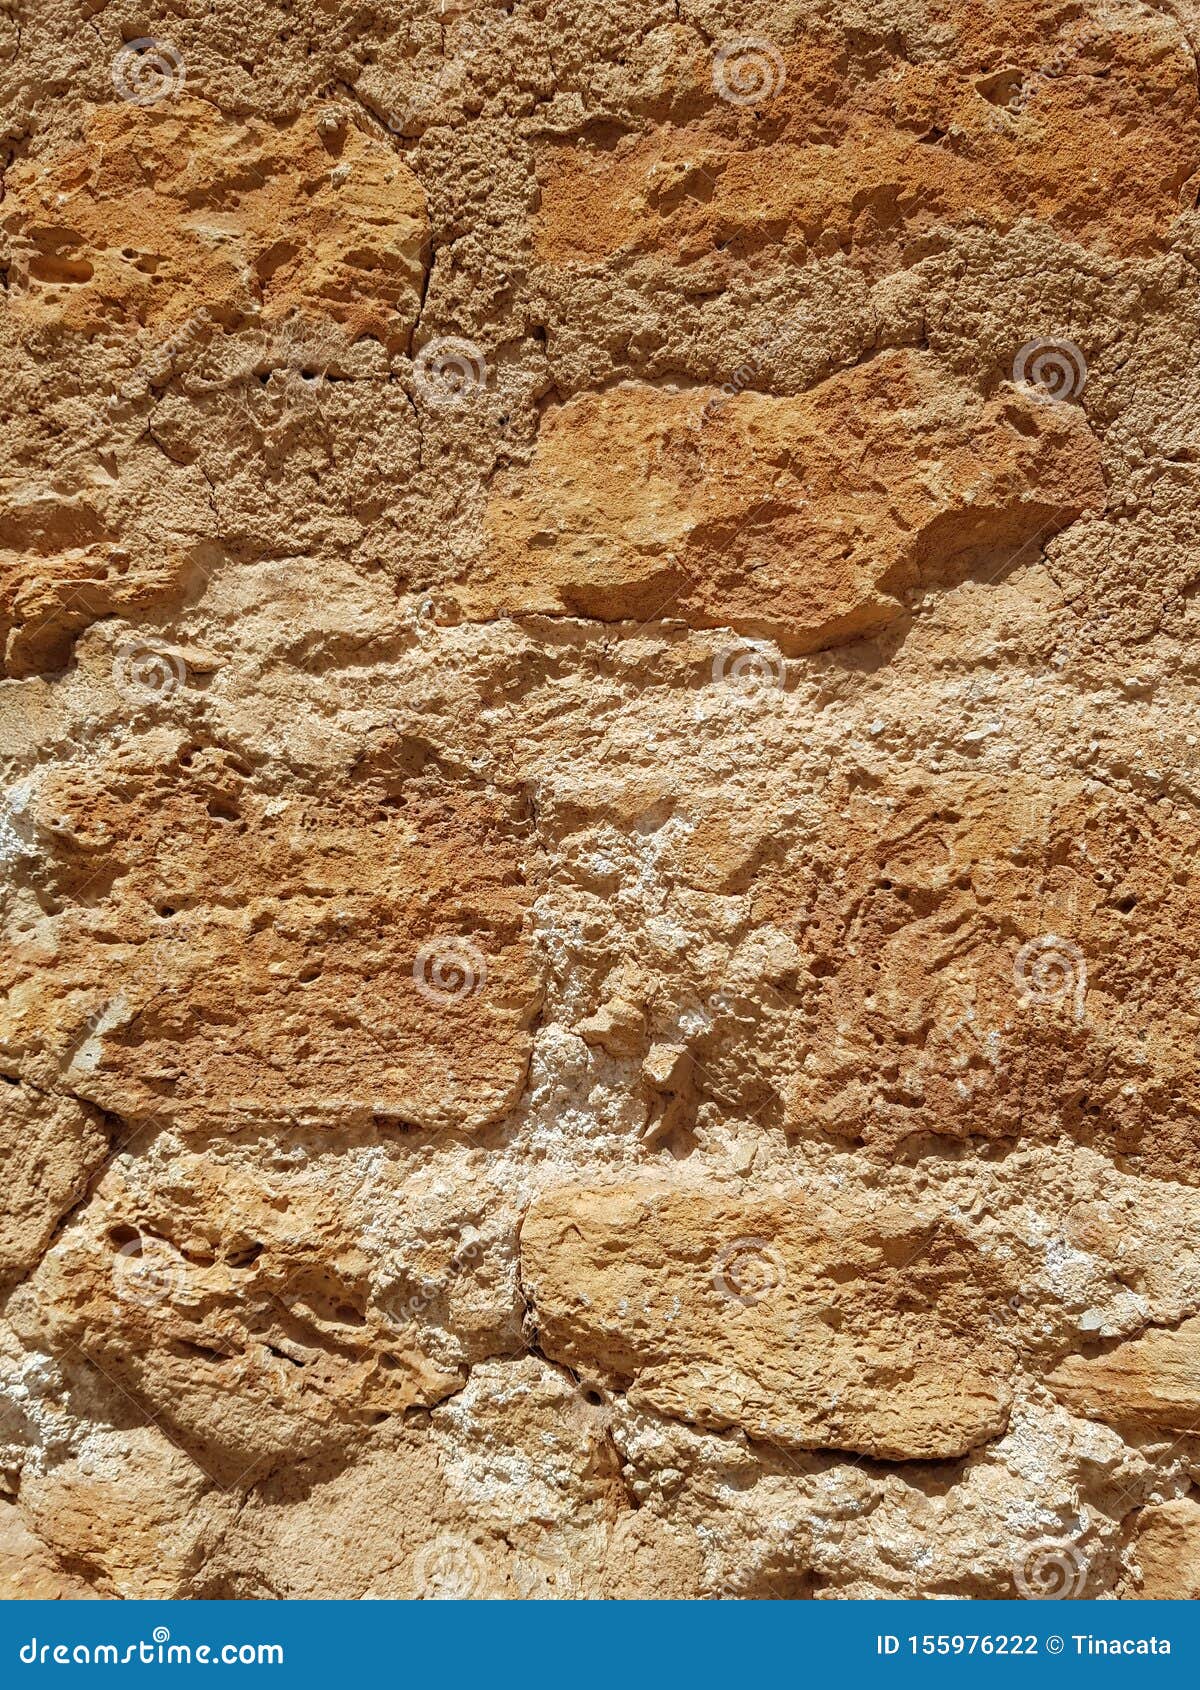 rusty brown mustard stone wall